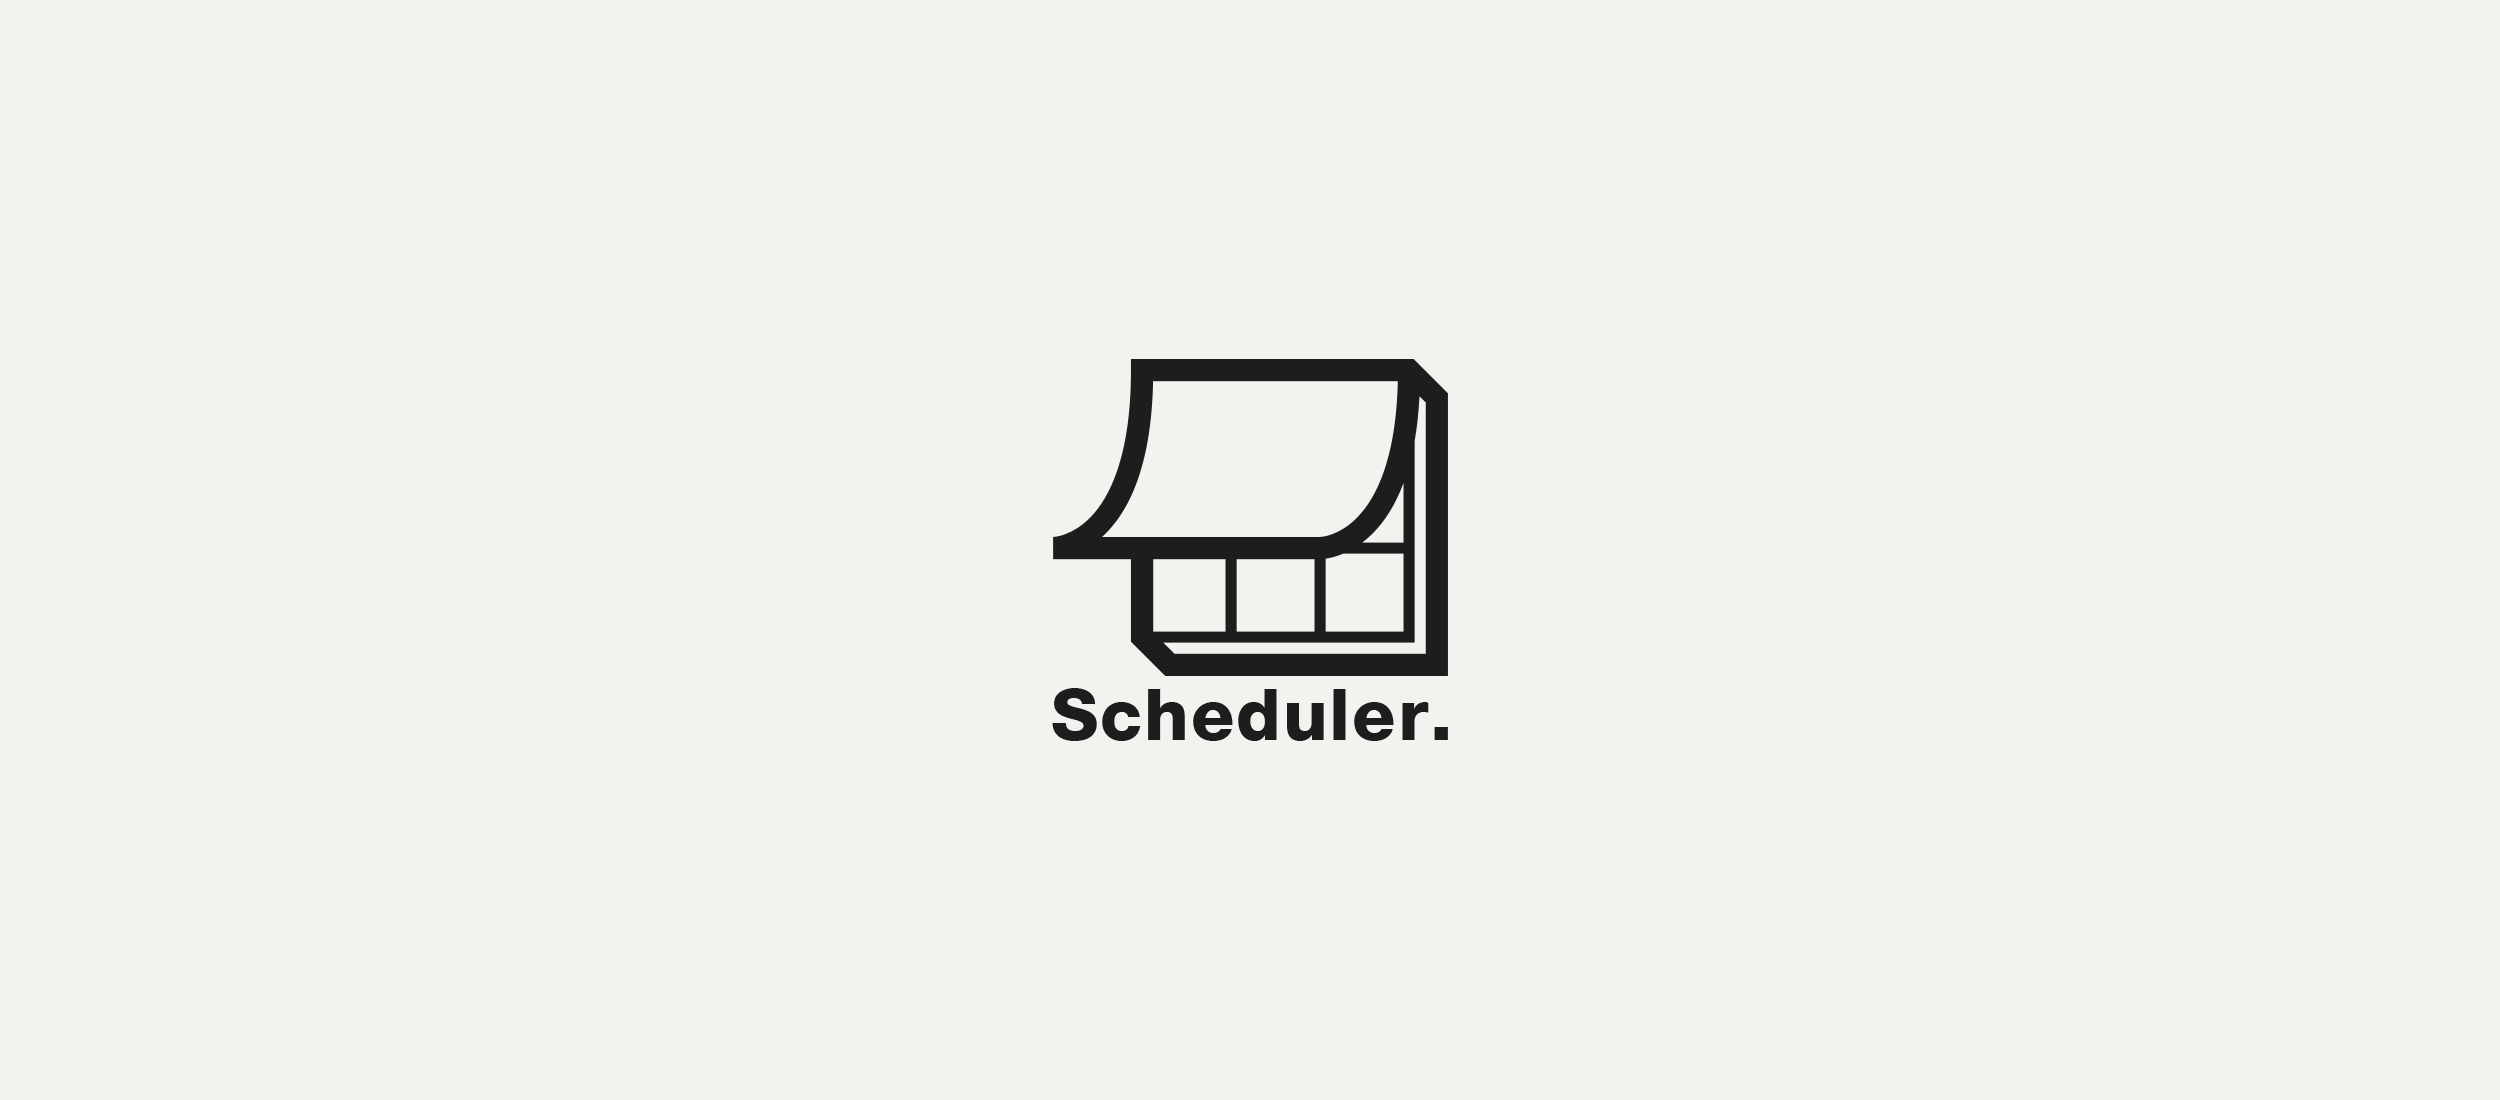 Scheduler logo design.